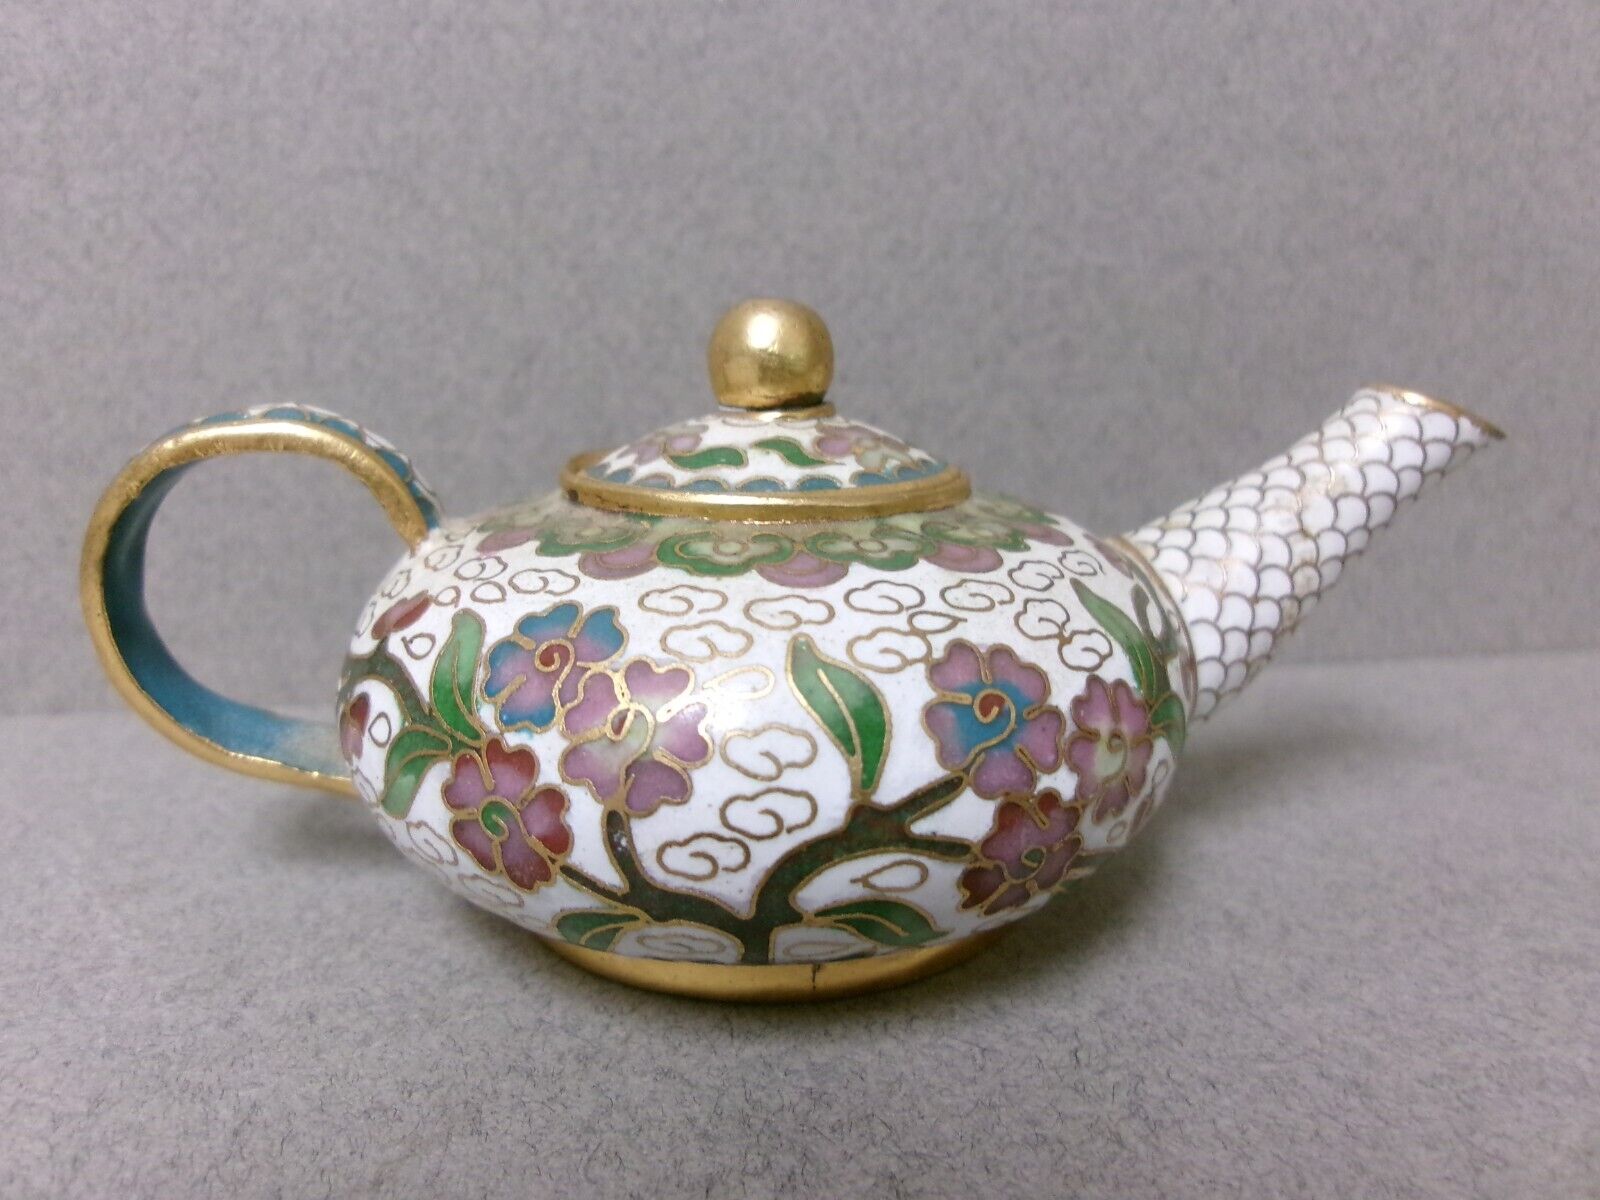 Miniature CLOISONNE Enamel Teapot - 4 1/2